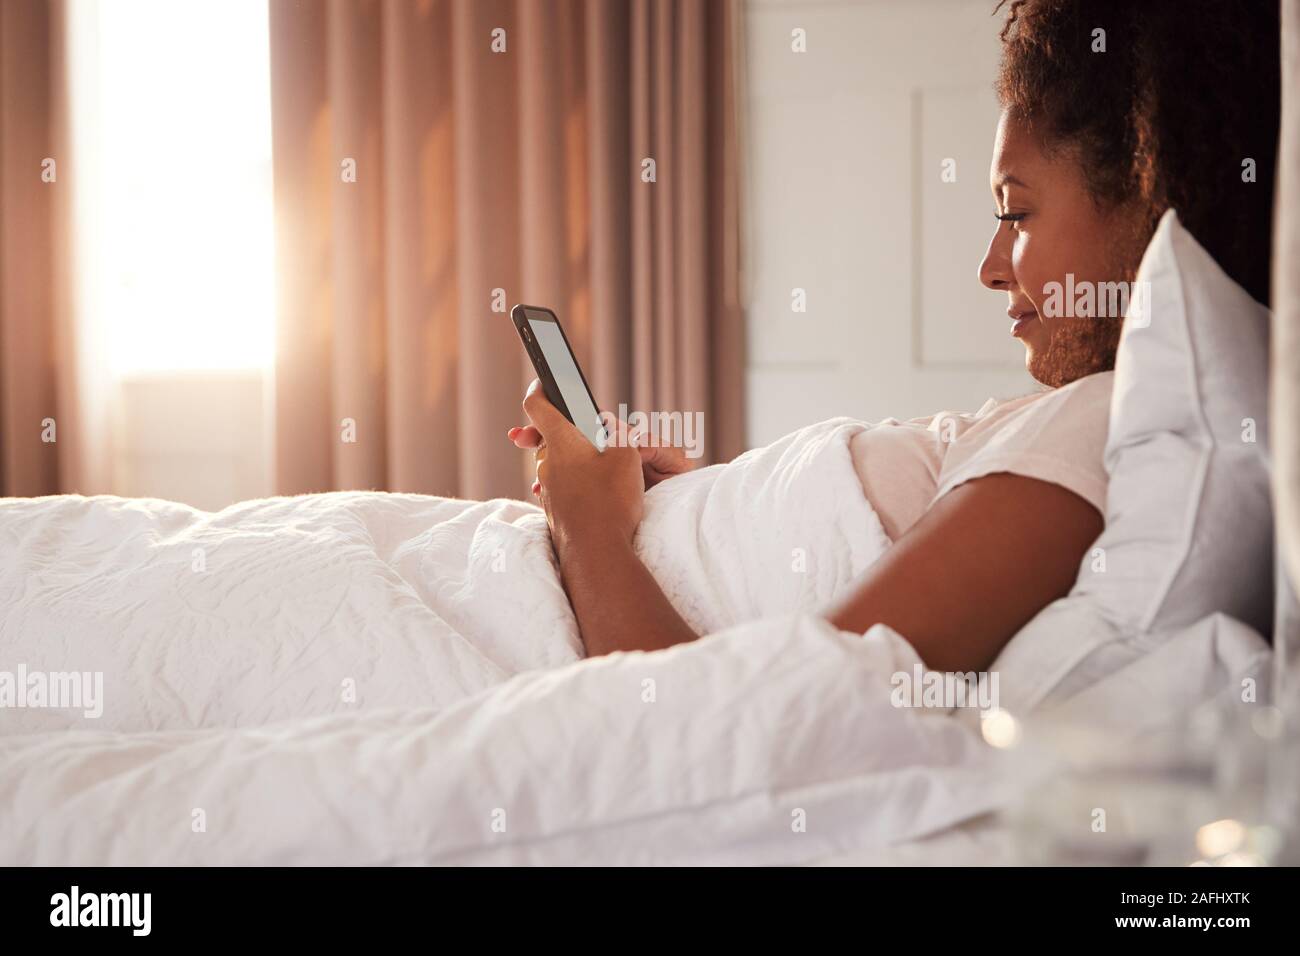 Frau sitzt oben im Bett am Handy suchen, nachdem sie aufgewacht Stockfoto